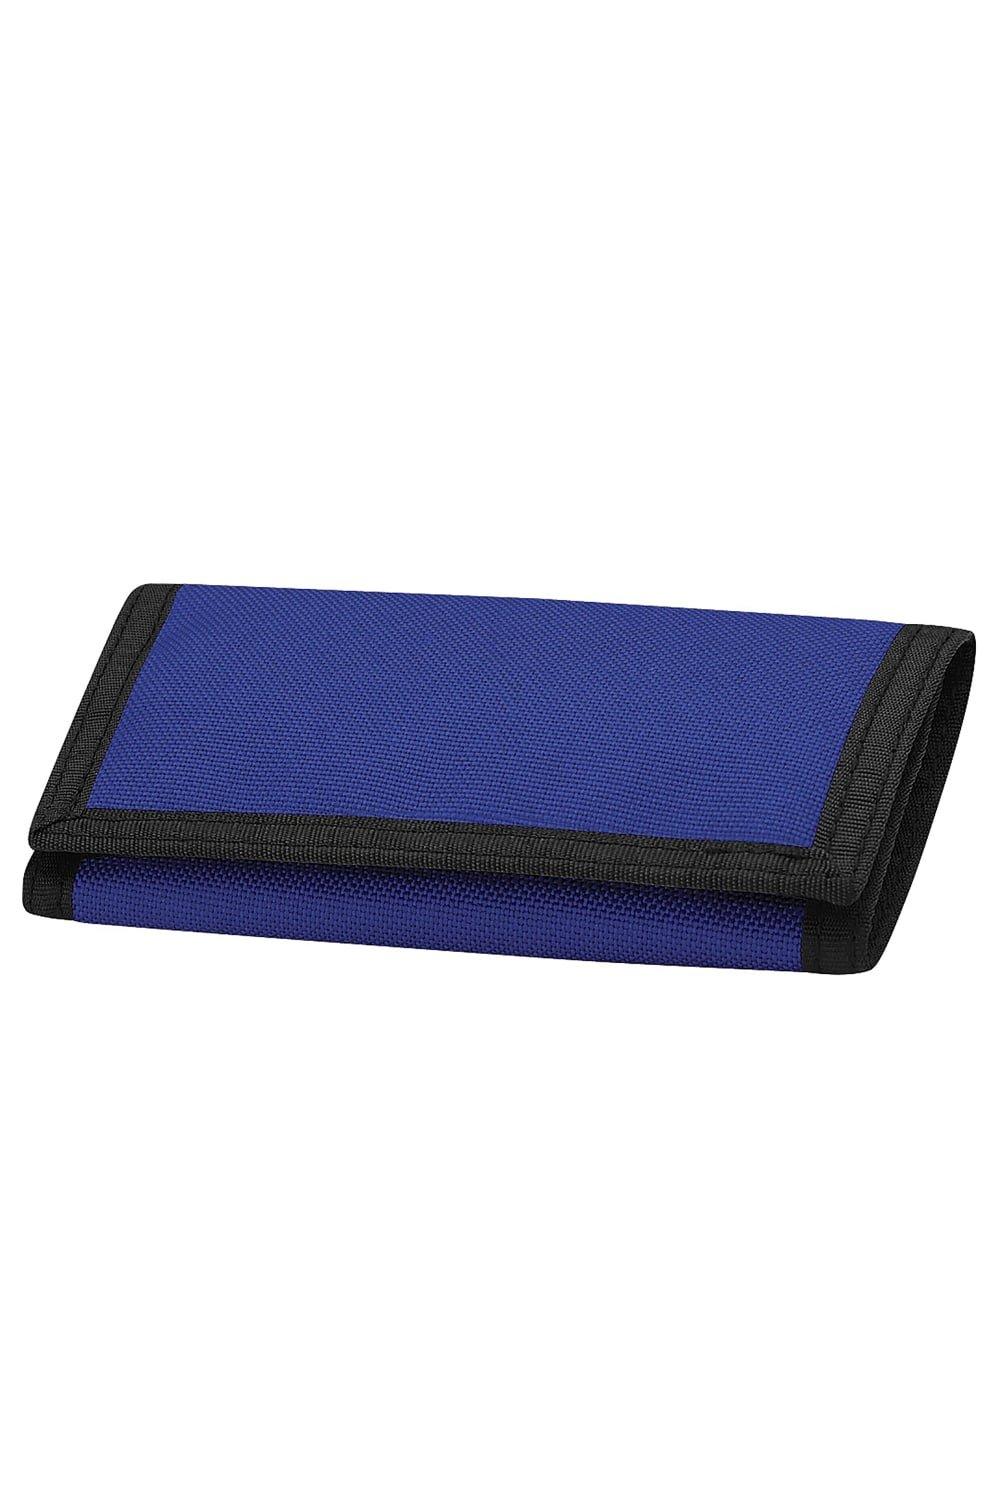 Кошелек Потрошитель Bagbase, синий переноска прямоугольная 13 5 х 9 3 х 10 см черная